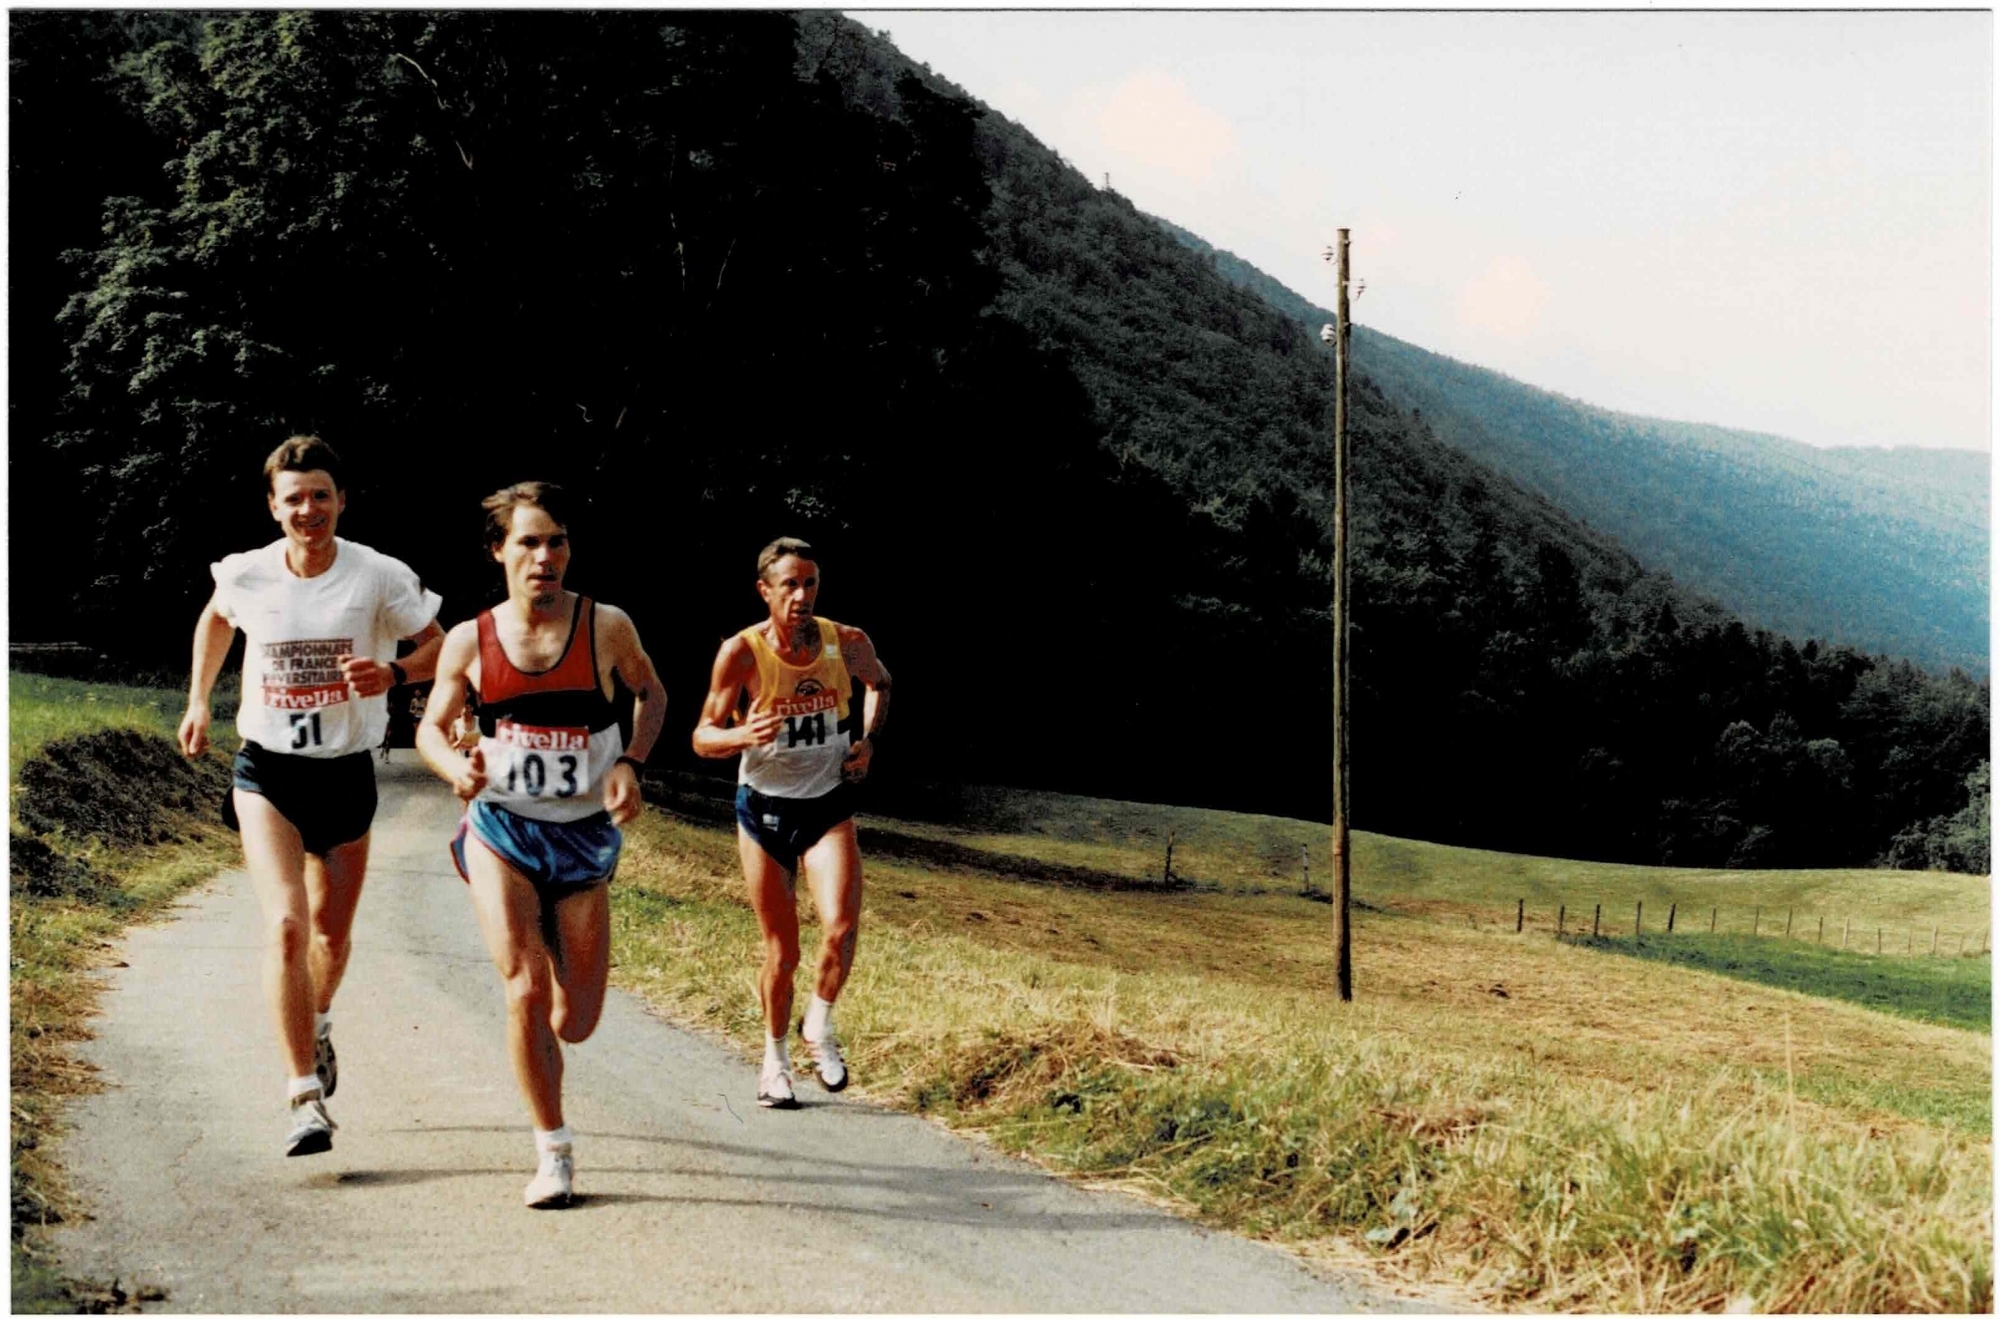 Passage de Didier Fatton (dossard 51), Jean-Blaise Montandon (103) et Daniel Siegenthaler (141) au pied de Clémesin lors de l'édition 1988 du Chaumont - Chasseral - Chaumont.